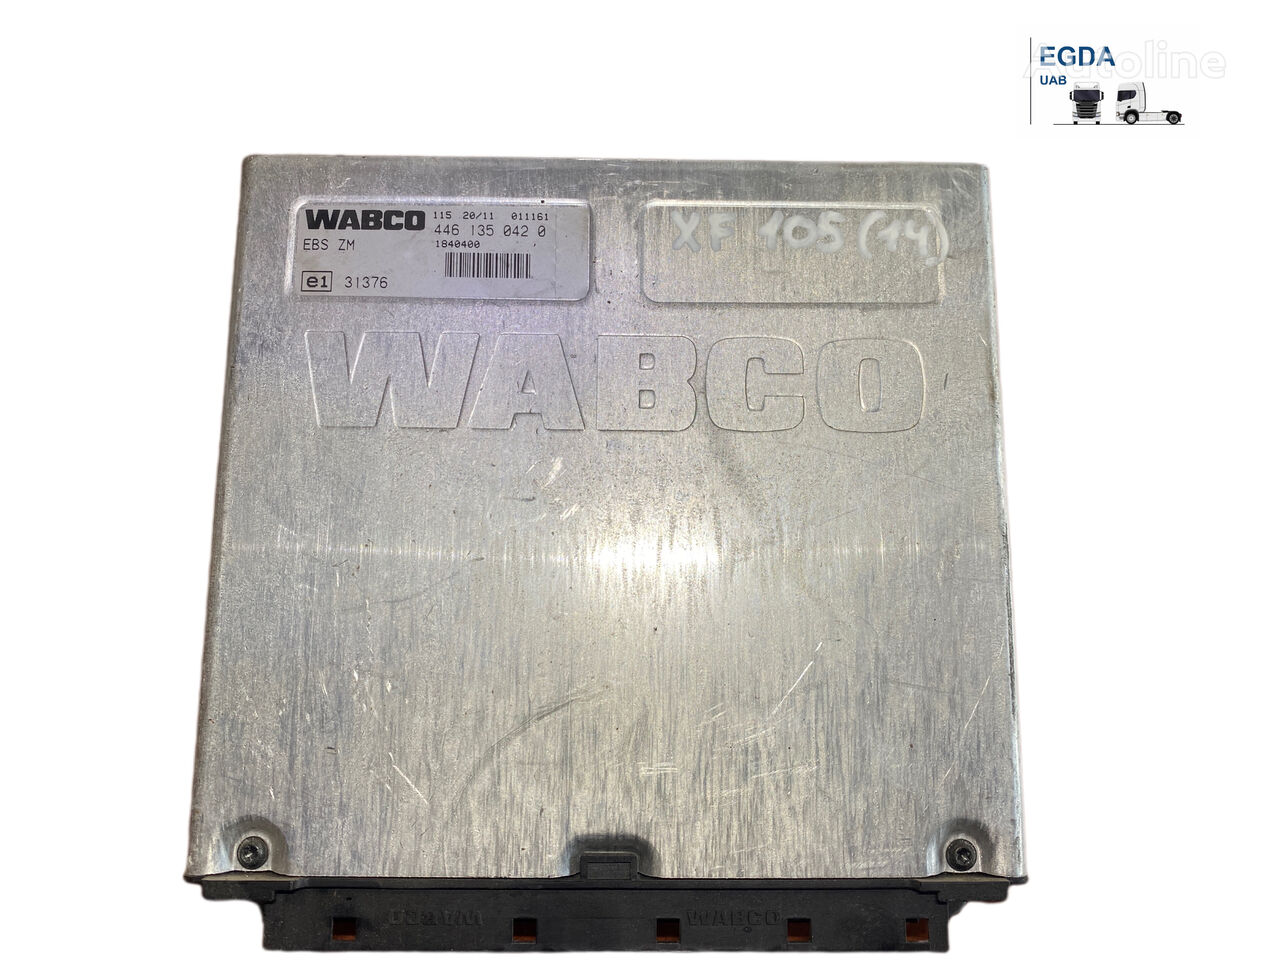 WABCO 1840400 Steuereinheit für DAF 105 Sattelzugmaschine